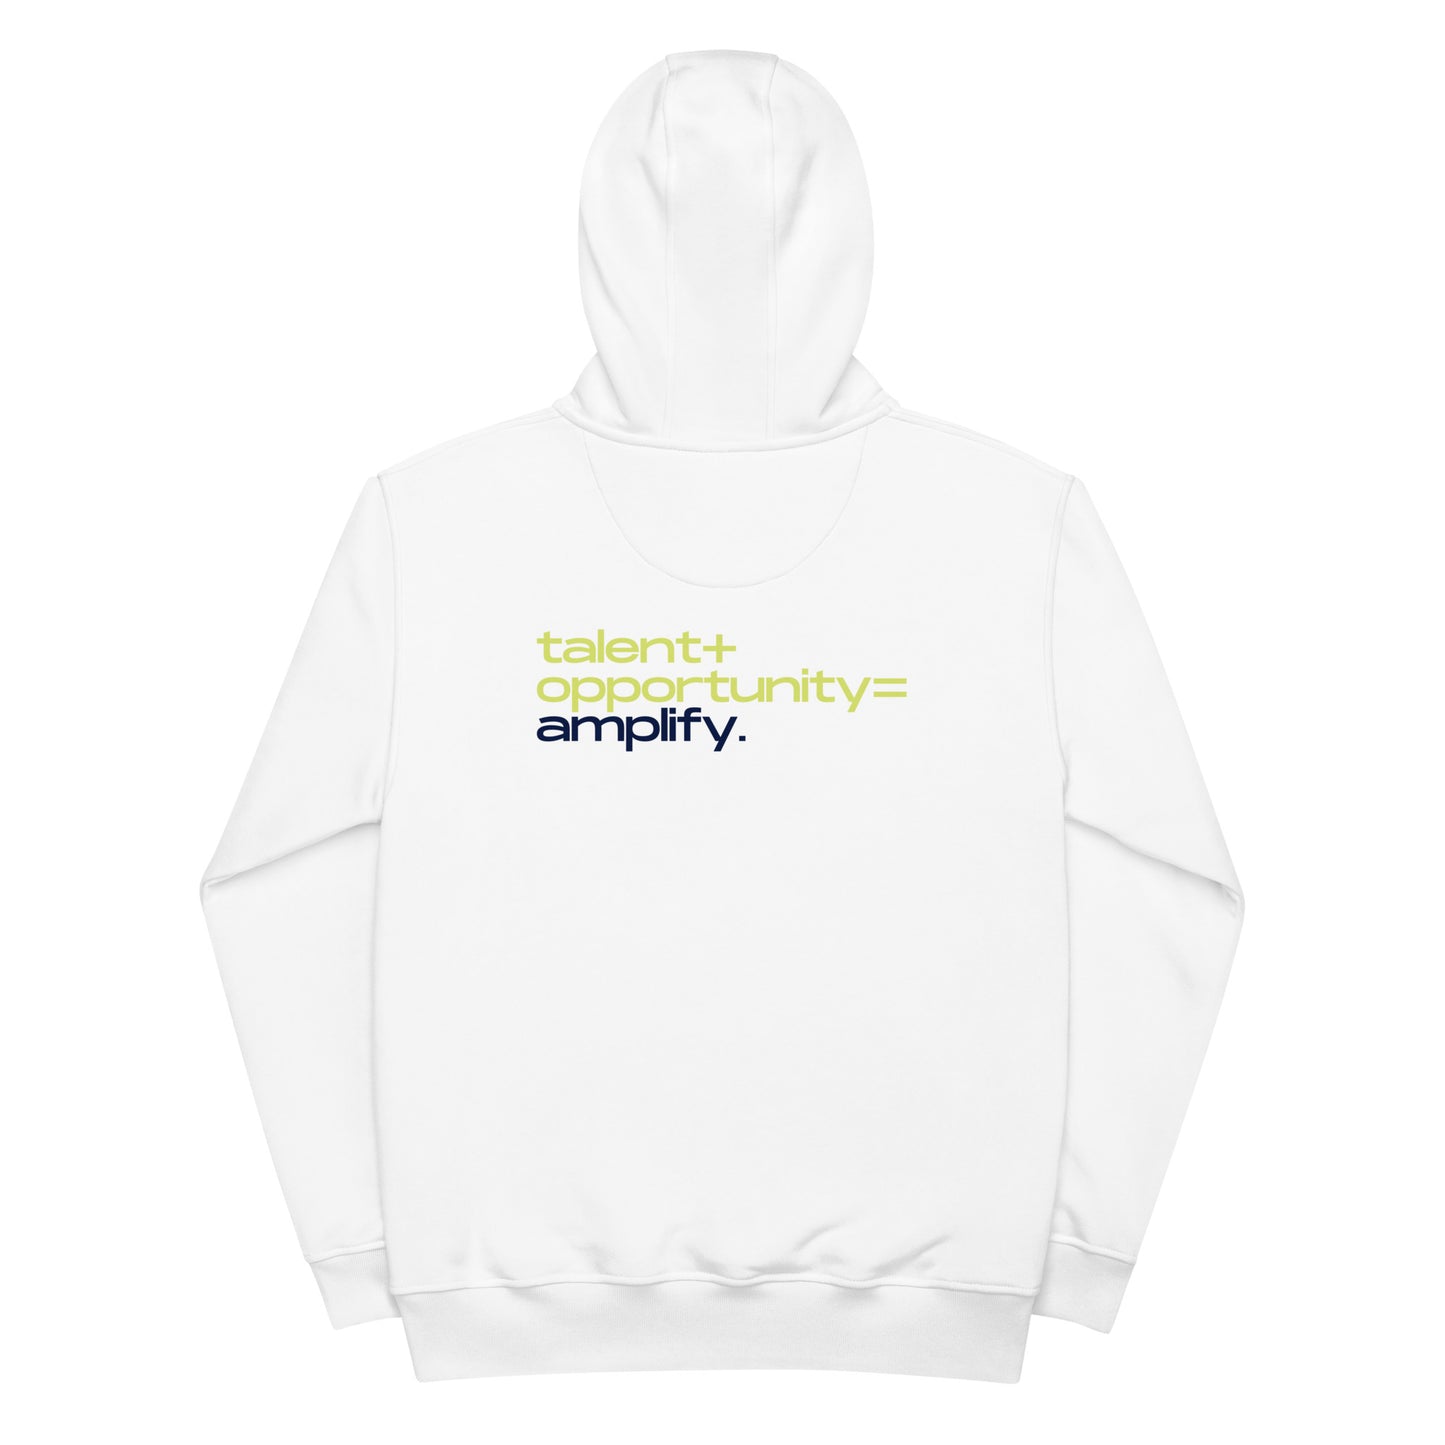 Amplify Logo | Premium eco hoodie